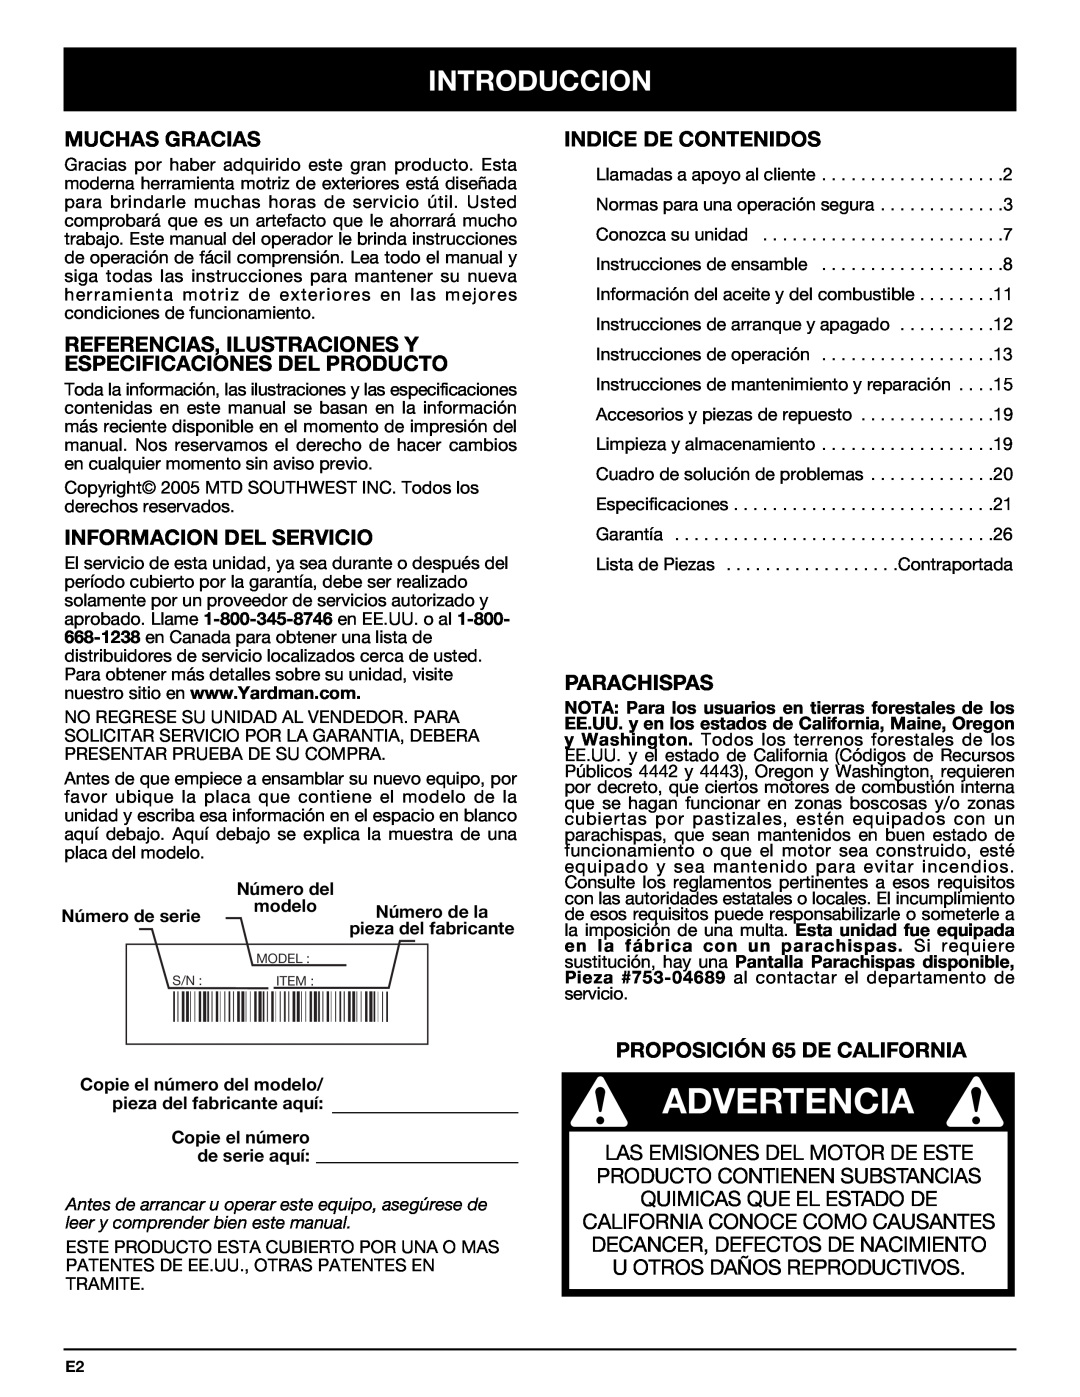 Bolens YM320BV Advertencia, Introduccion, Muchas Gracias, Informacion Del Servicio, Indice De Contenidos, Parachispas 